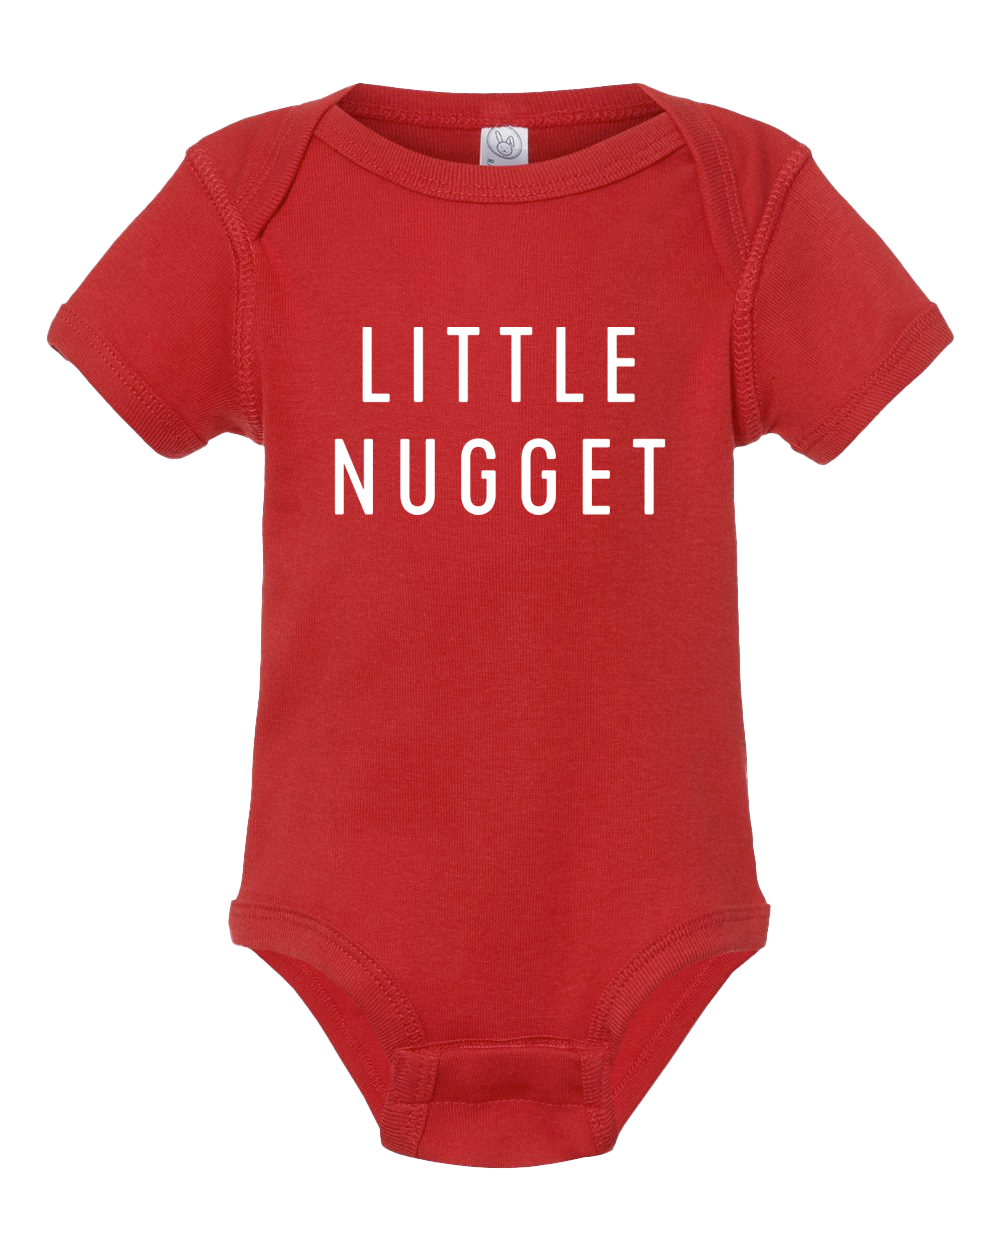 Little Nugget Onesie